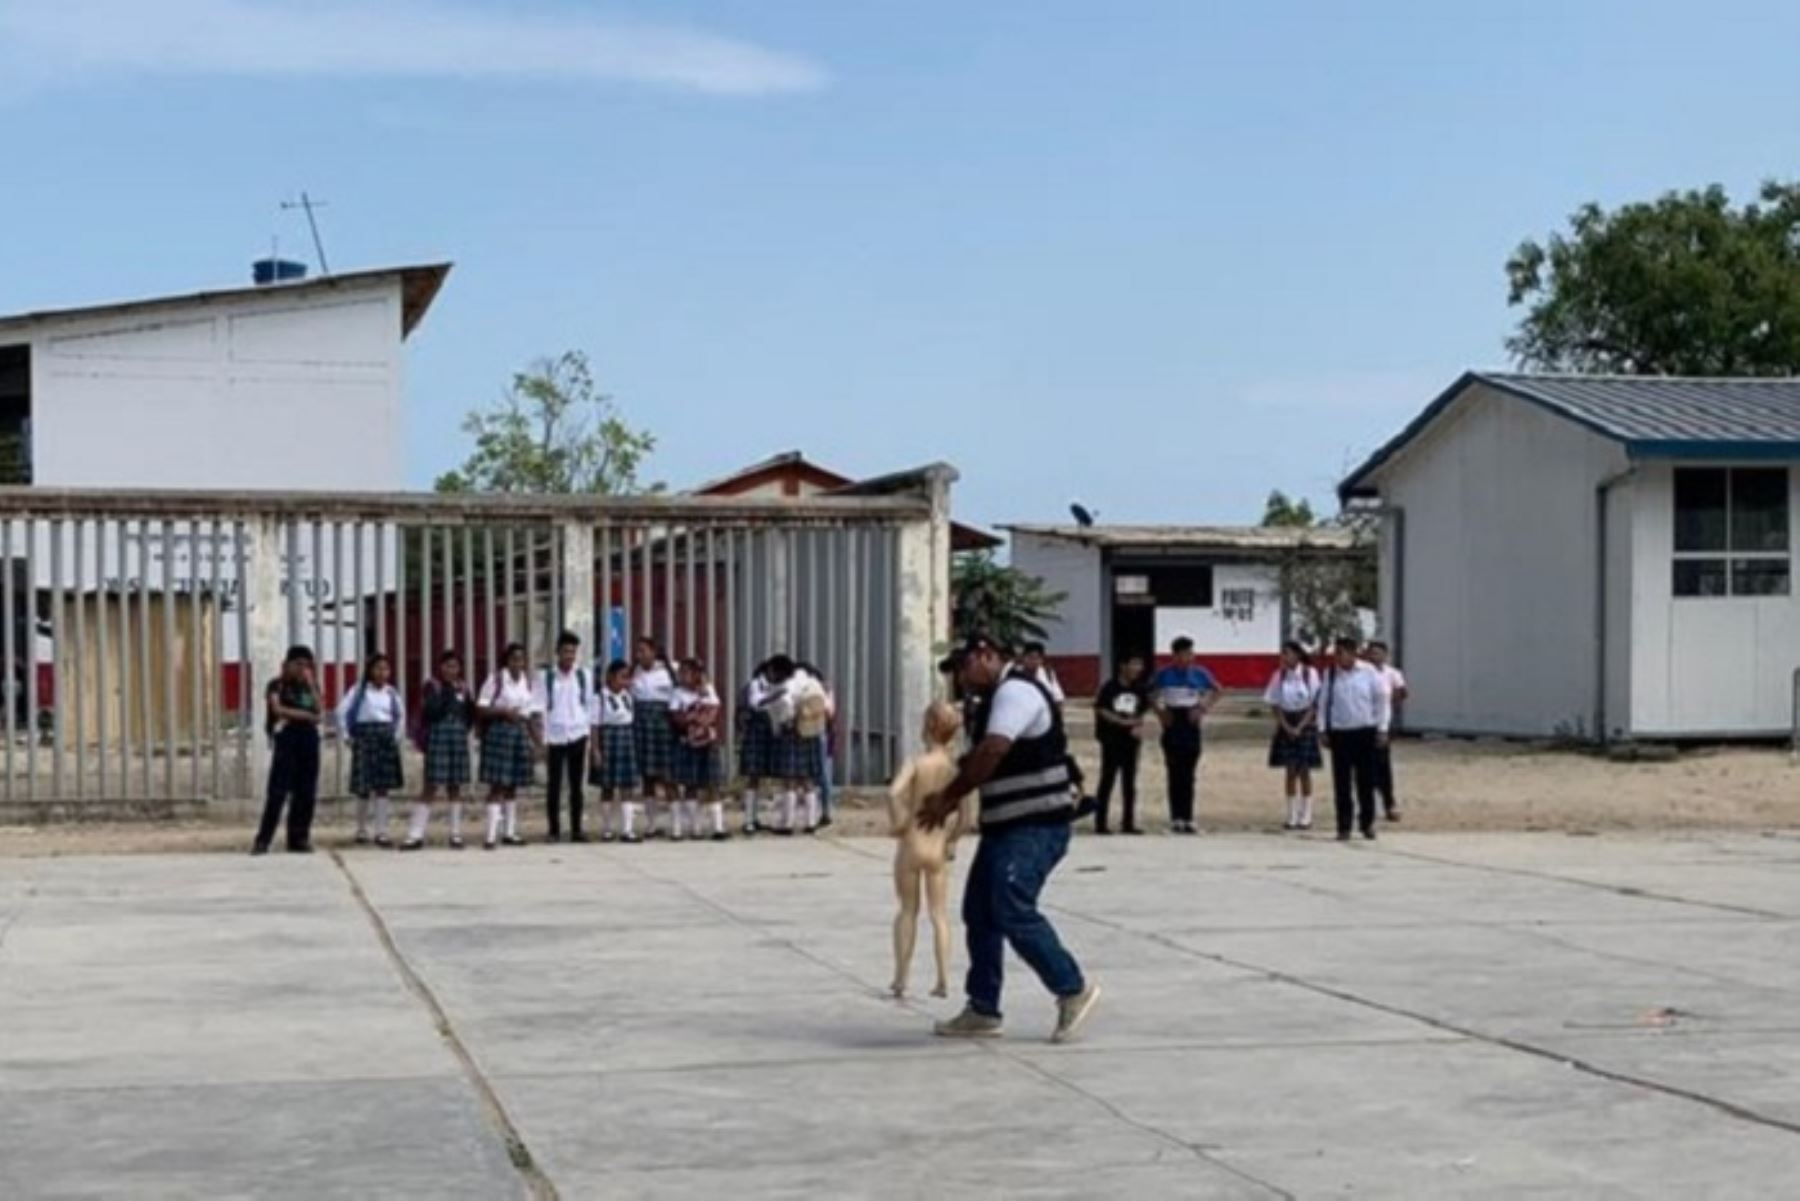 La jornada denominada “Cuidémonos 2019, que los pirotécnicos no dañen tu vida” ya se ha desarrollado en el colegio María Mafalda Lama de la provincia de Tumbes.